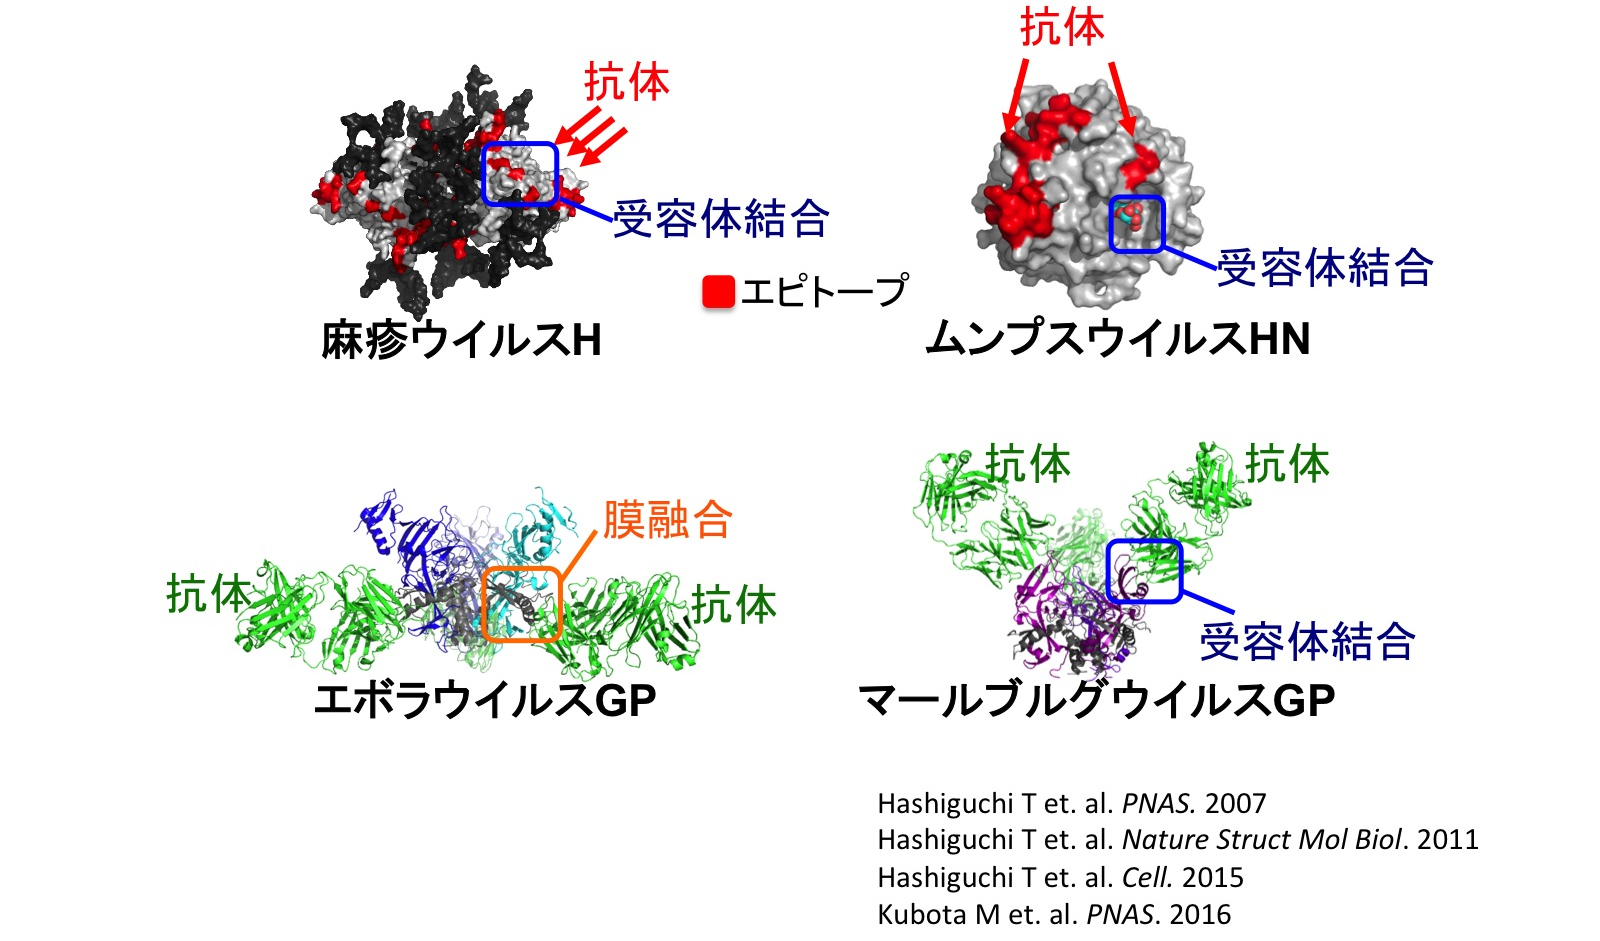 図2-1. 構造解析技術を活用したウイルス研究（中和メカニズムの解明）